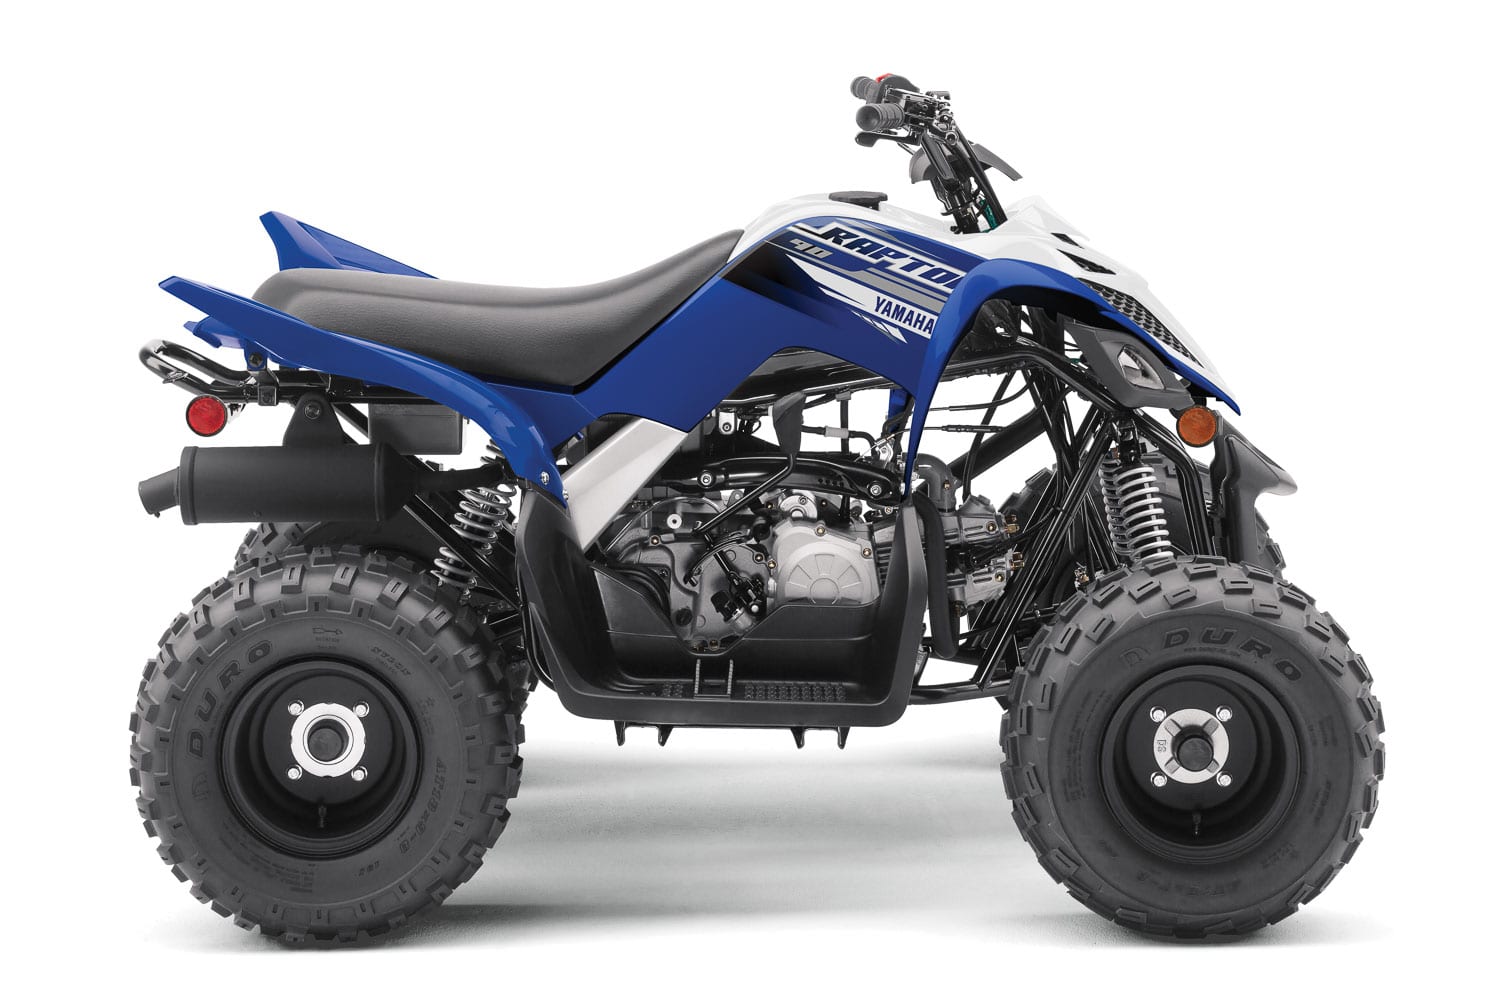 2020 Yamaha ATV Lineup